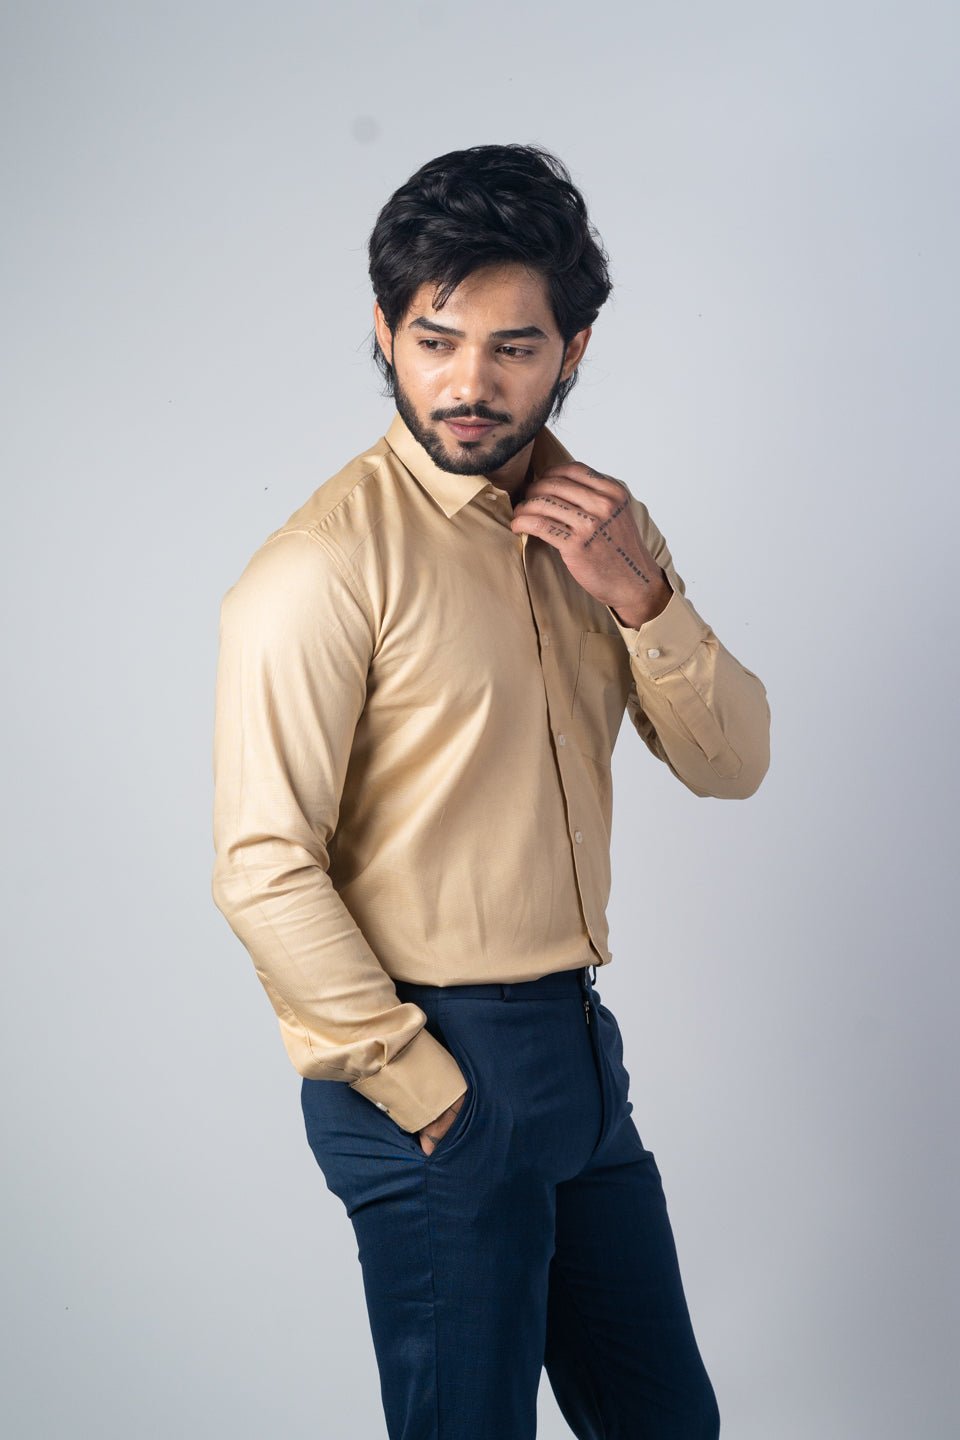 Beige Color Micro Checks Texture Satin Cotton Shirt For Men - Punekar Cotton